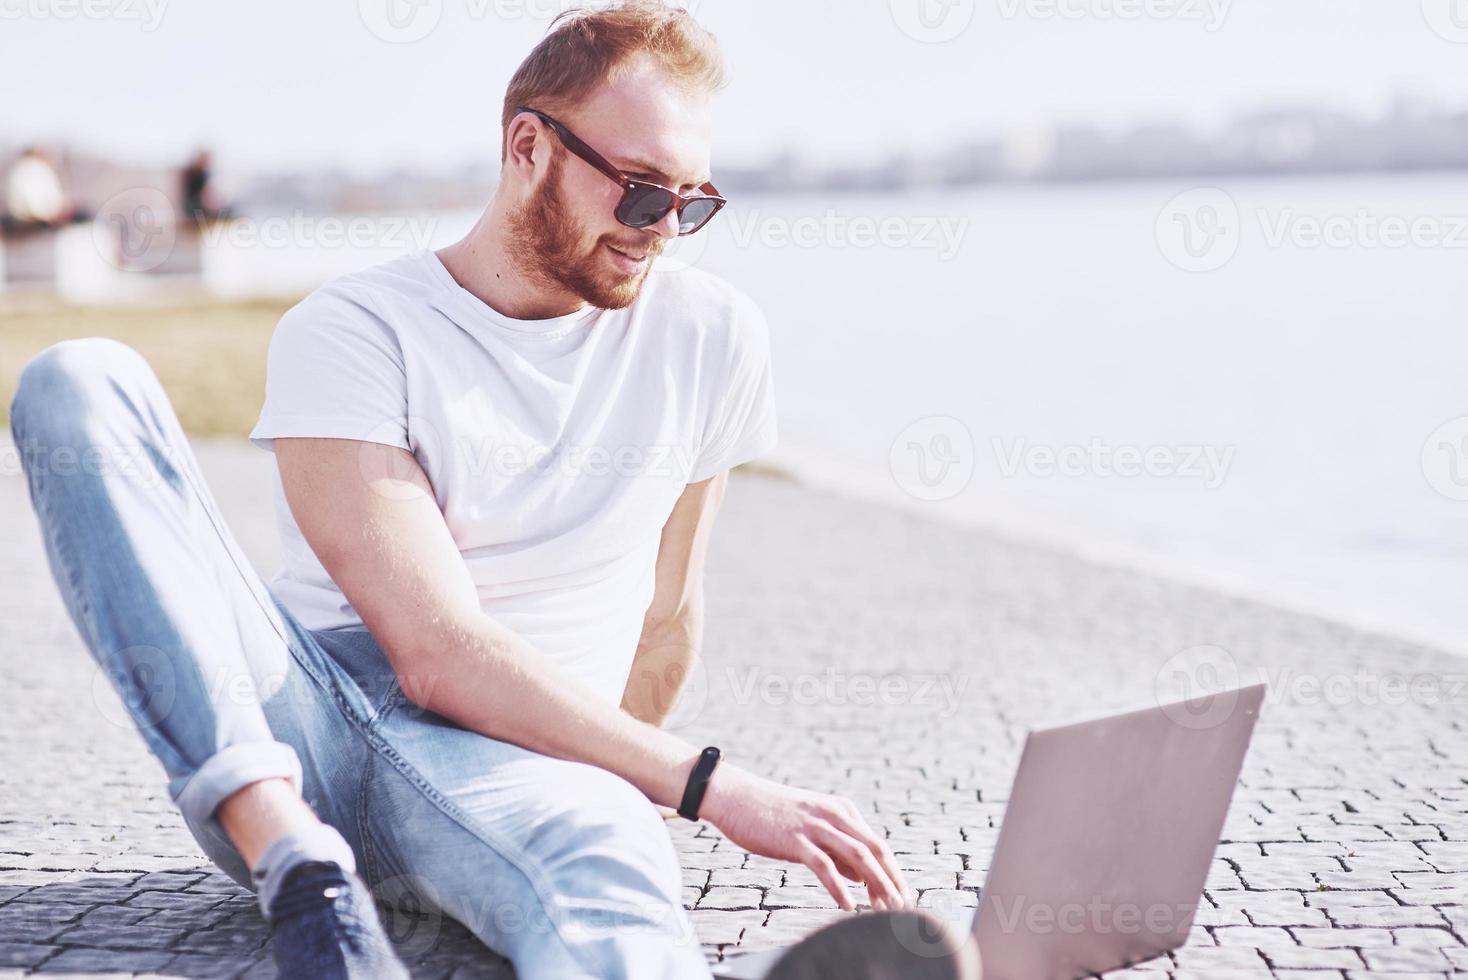 jonge man zit met laptop buiten het kantoor. student online leren. zomer zonnige dag foto